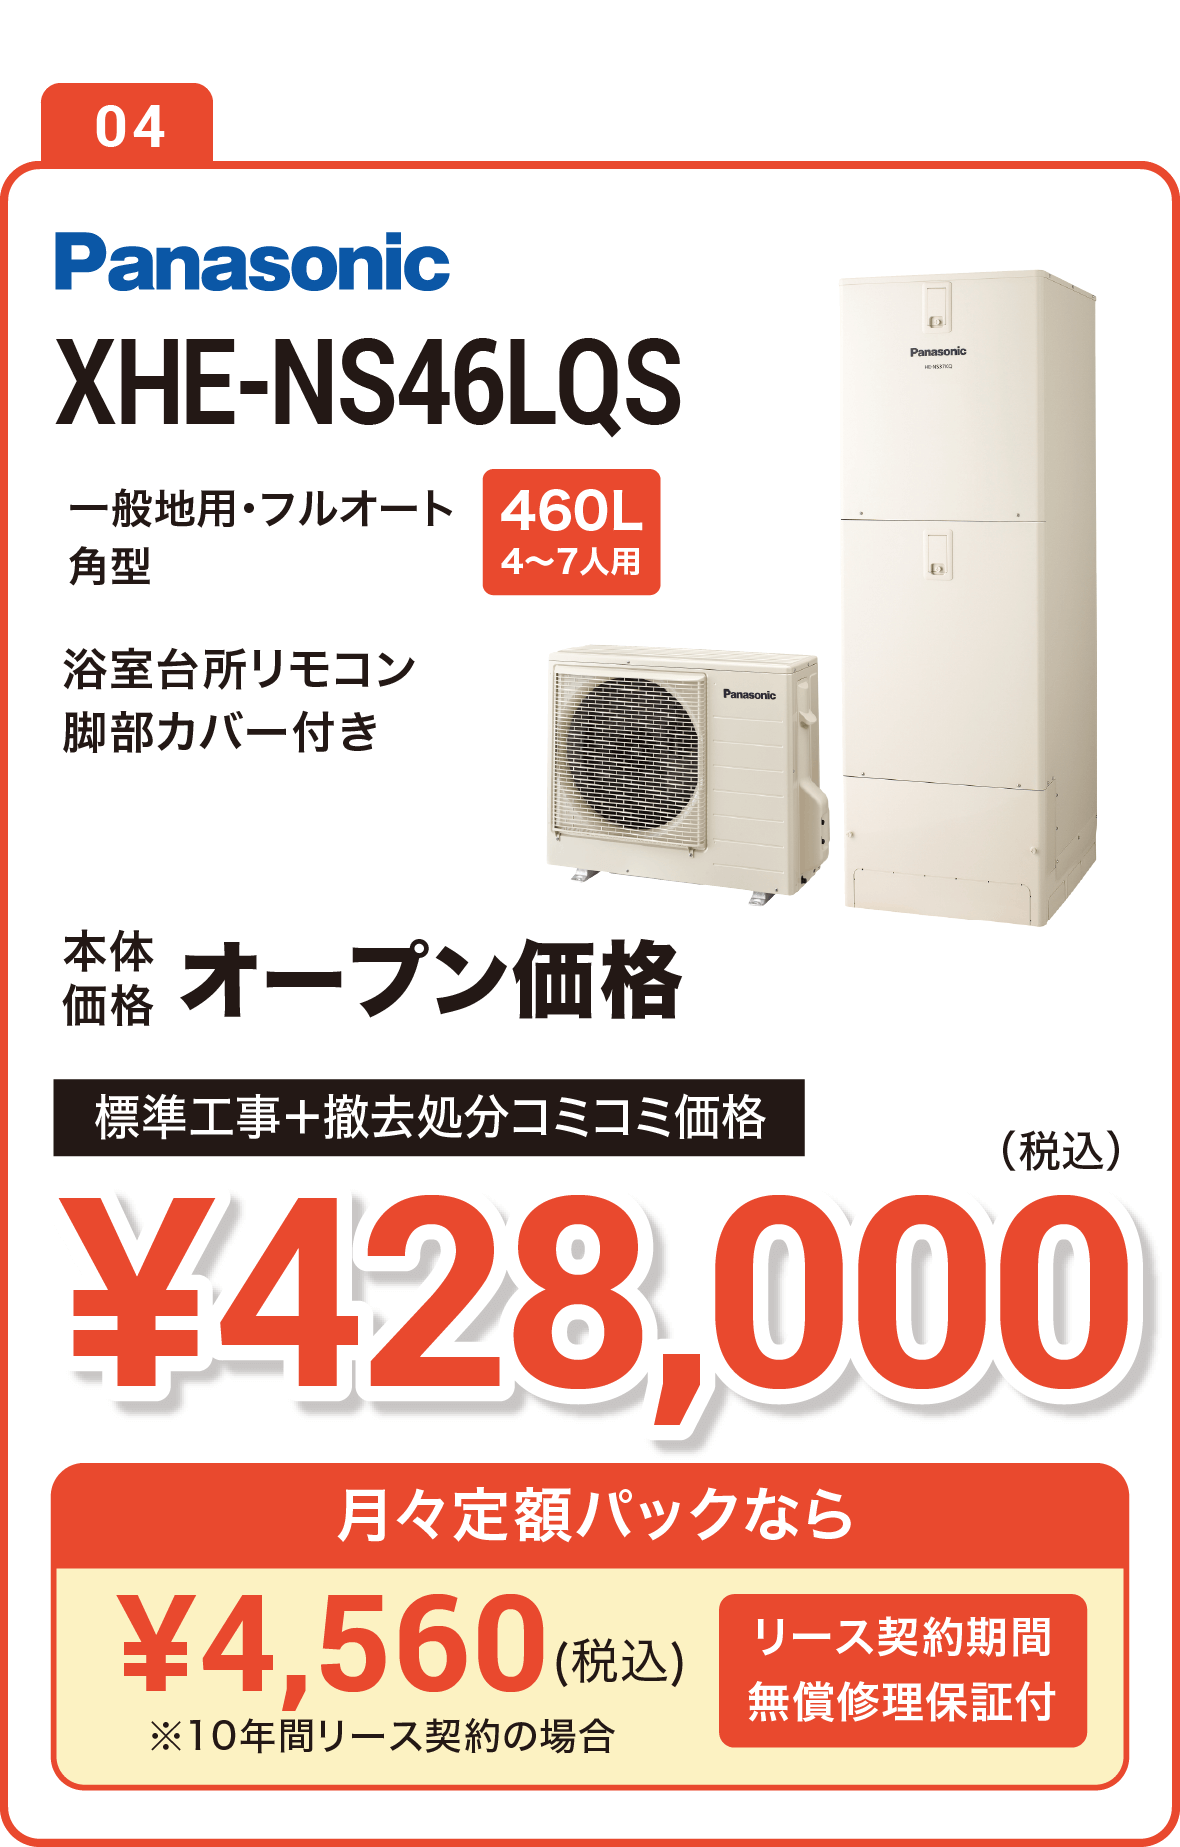 【今なら補助金10万円】Panasonic XHE-S46LQS 460L(4～7人用) 標準工事＋撤去処分コミコミ価格で実質378,000円（税込）、月々定額パックなら5,150円（税込）